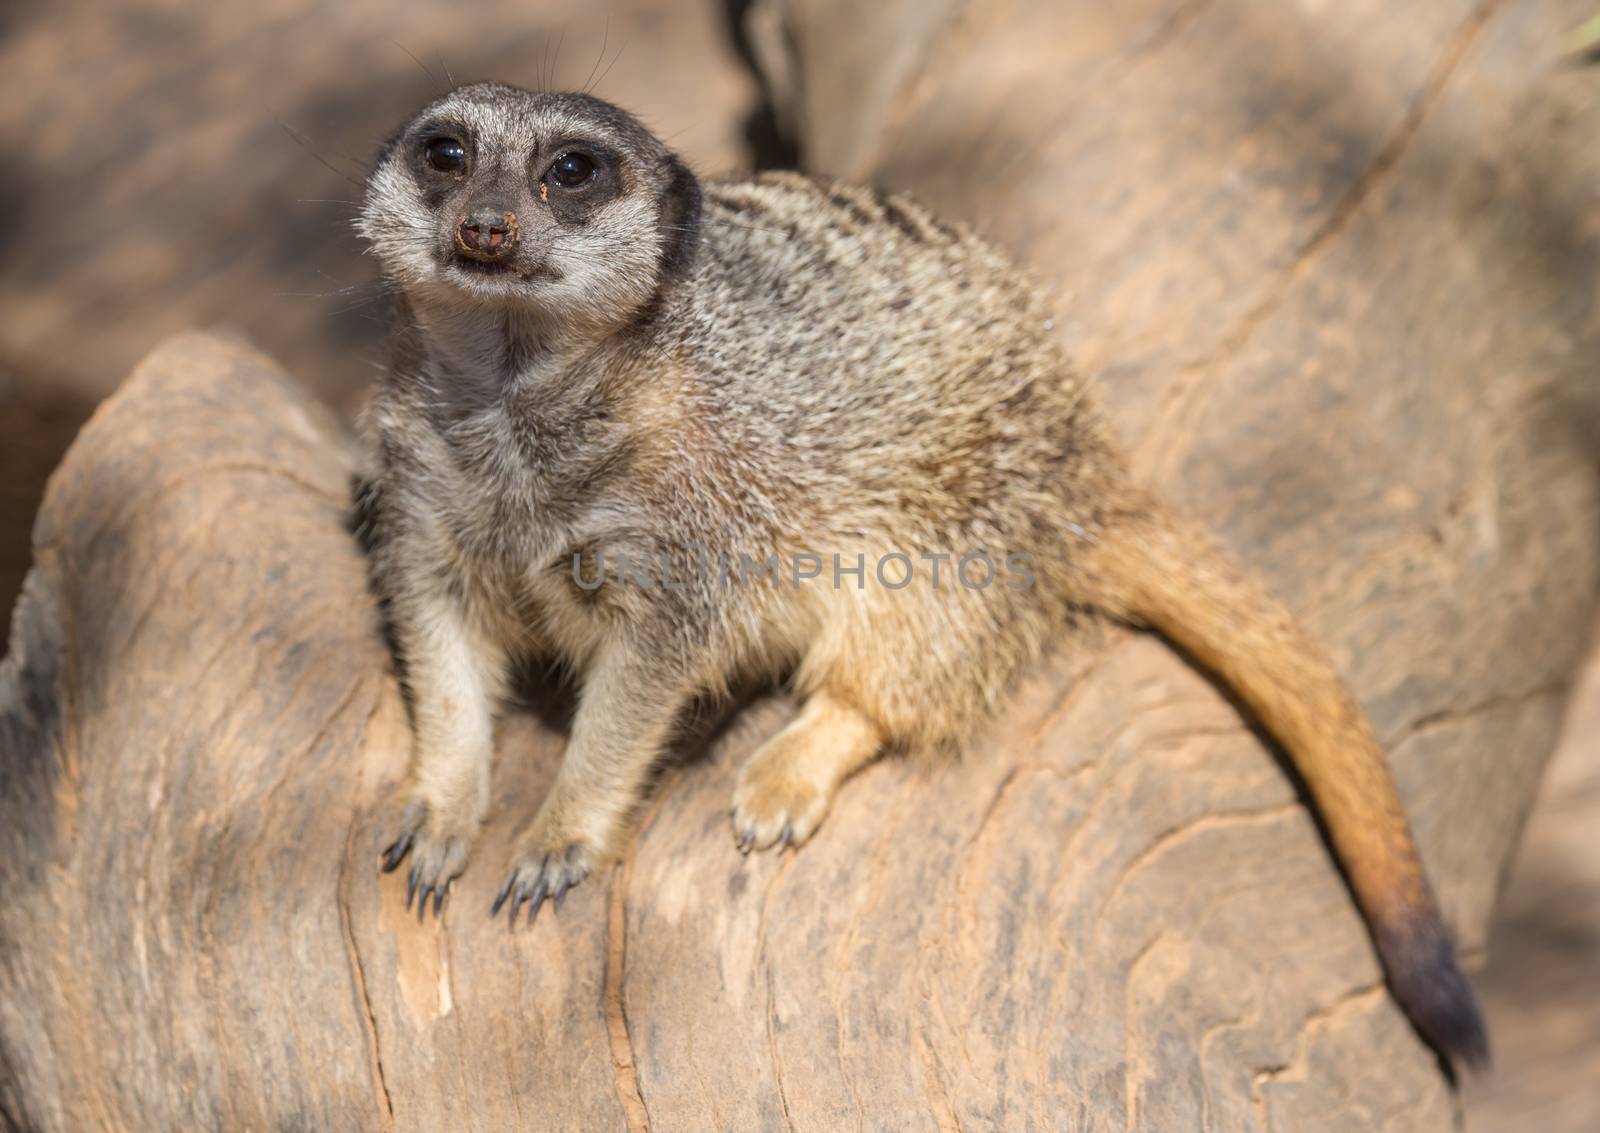 Meerkat or Suricate Animal by fouroaks